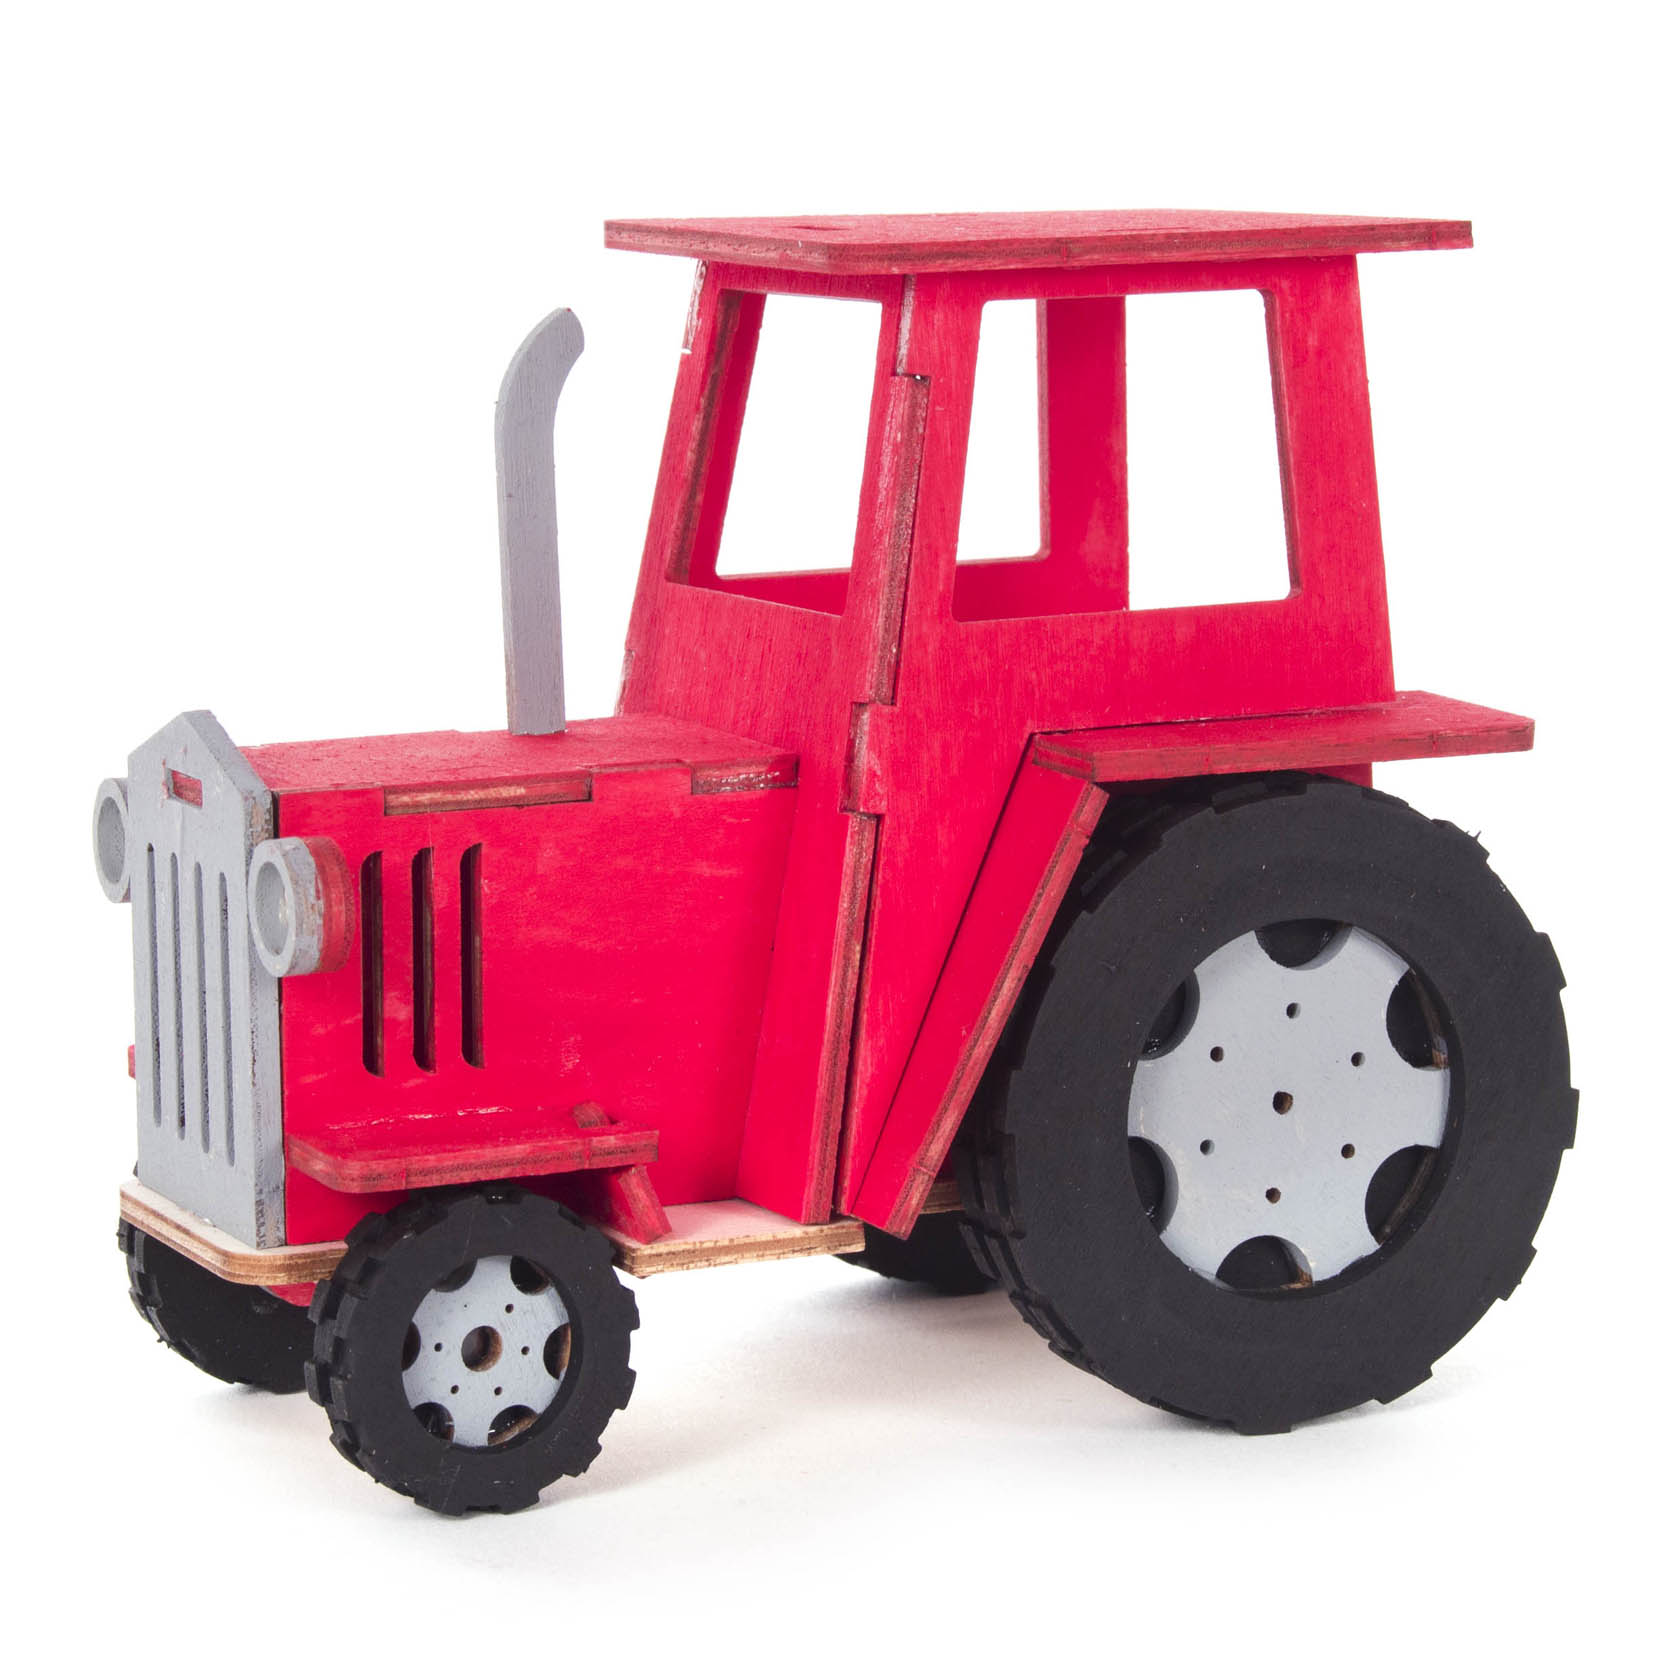 Bastelsatz Traktor auf Platte 13x8x11cm